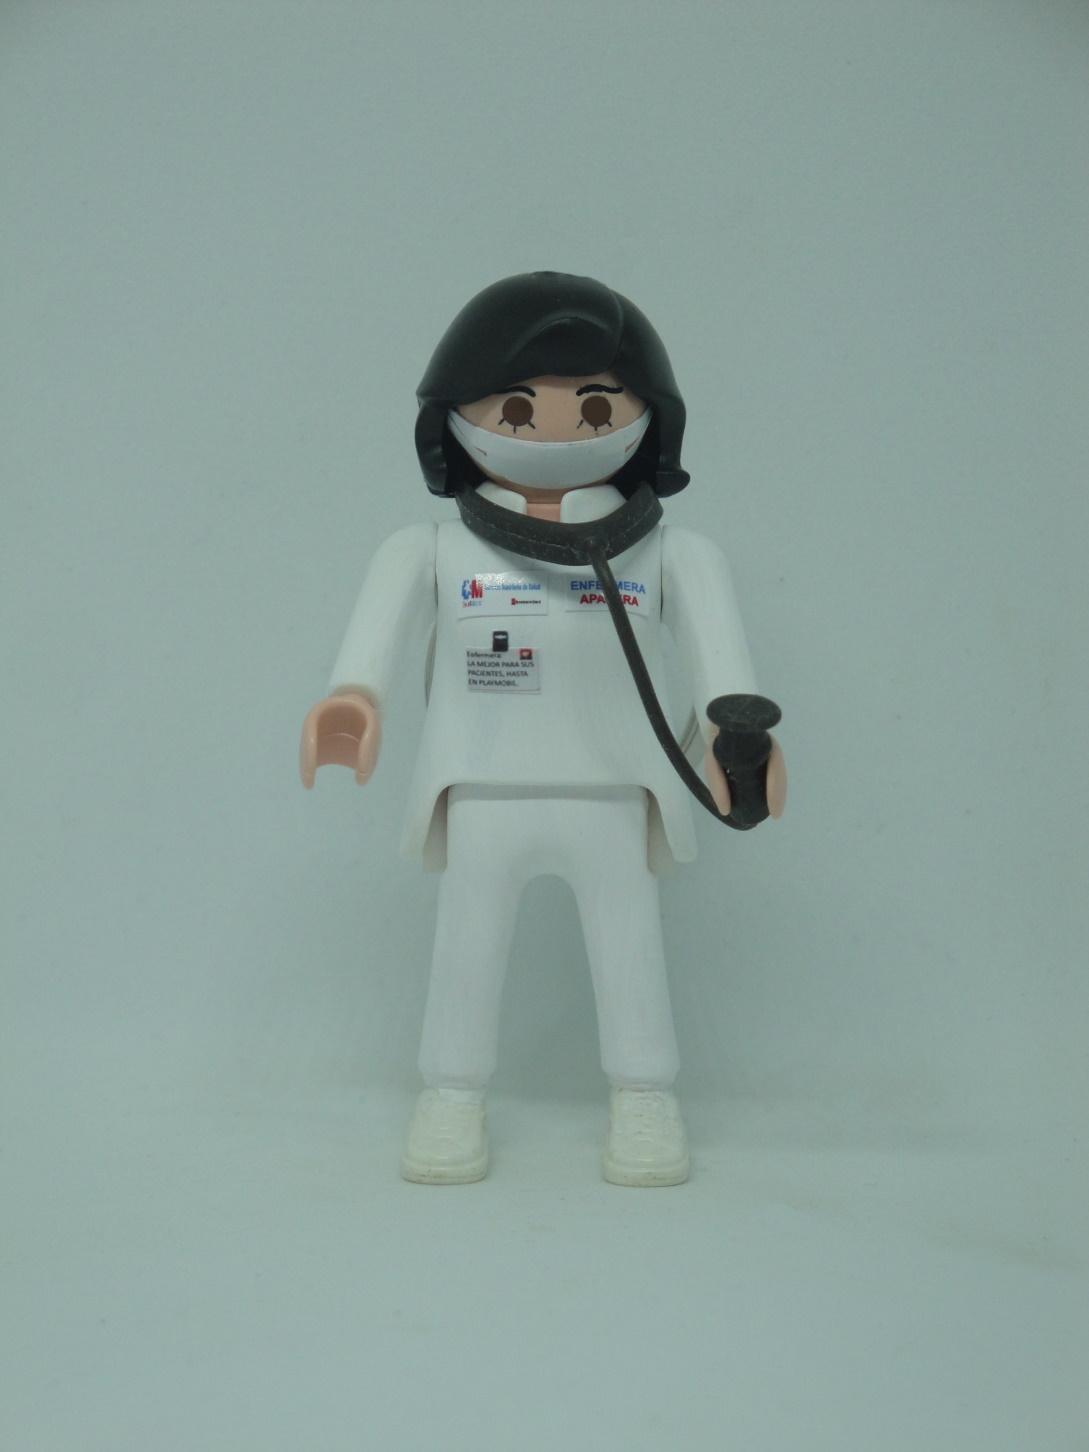 Playmobil personalizado con el uniforme de Enfermera del SERMAS Servicio Madrileño de Salud mujer